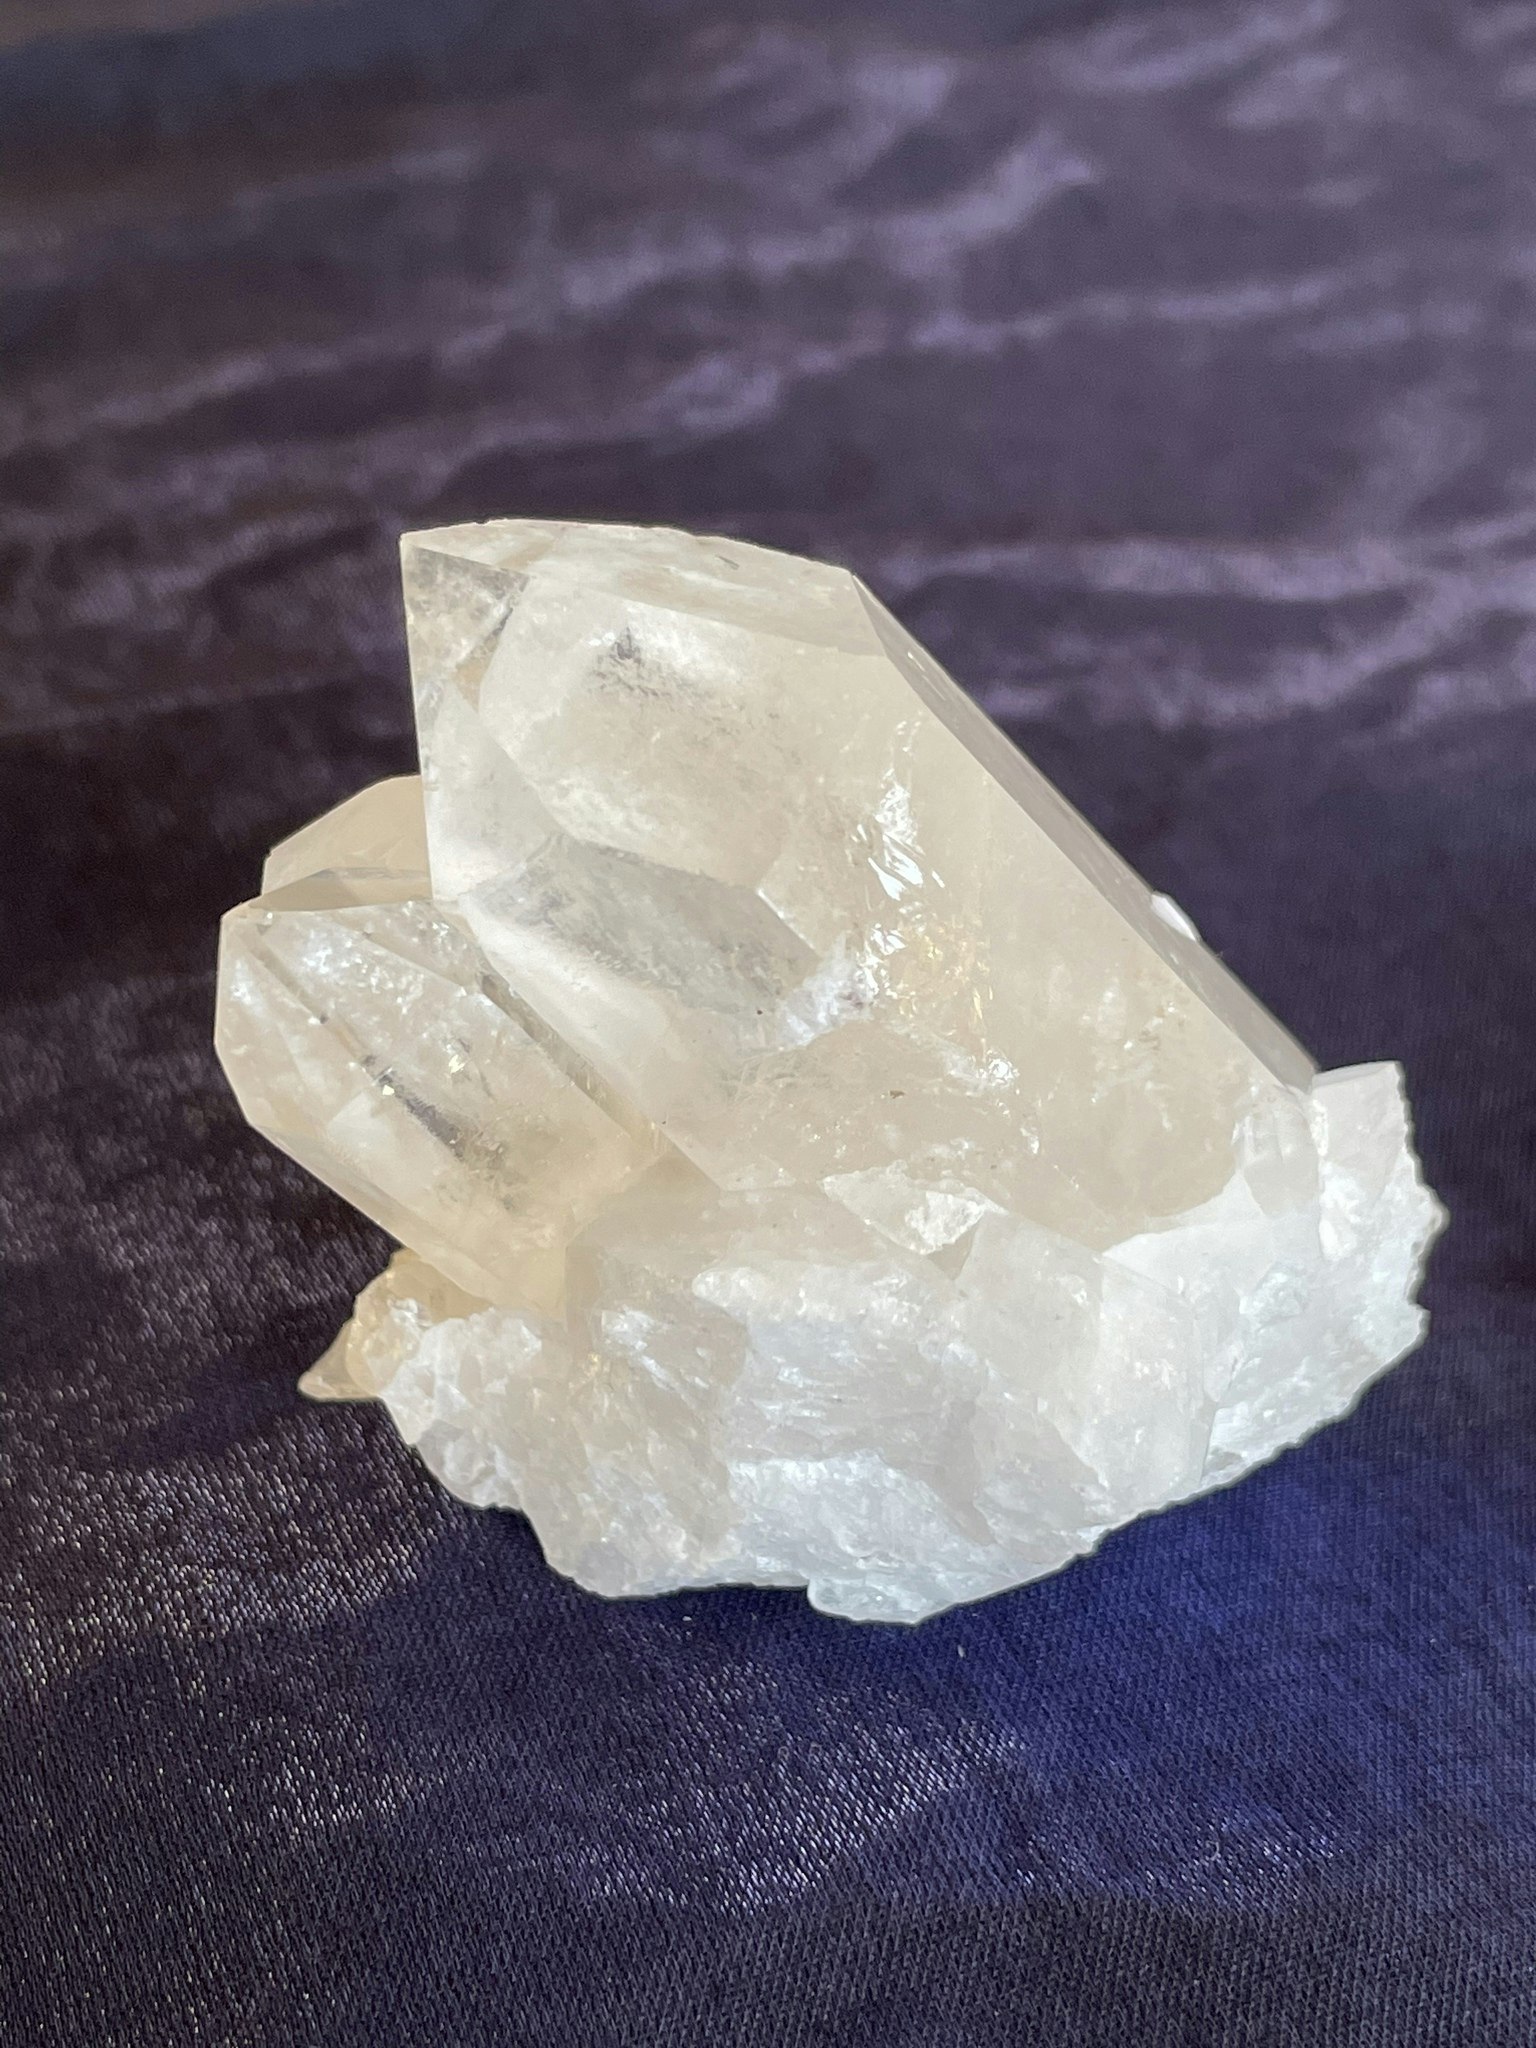 Bergkristall kluster (BK1)